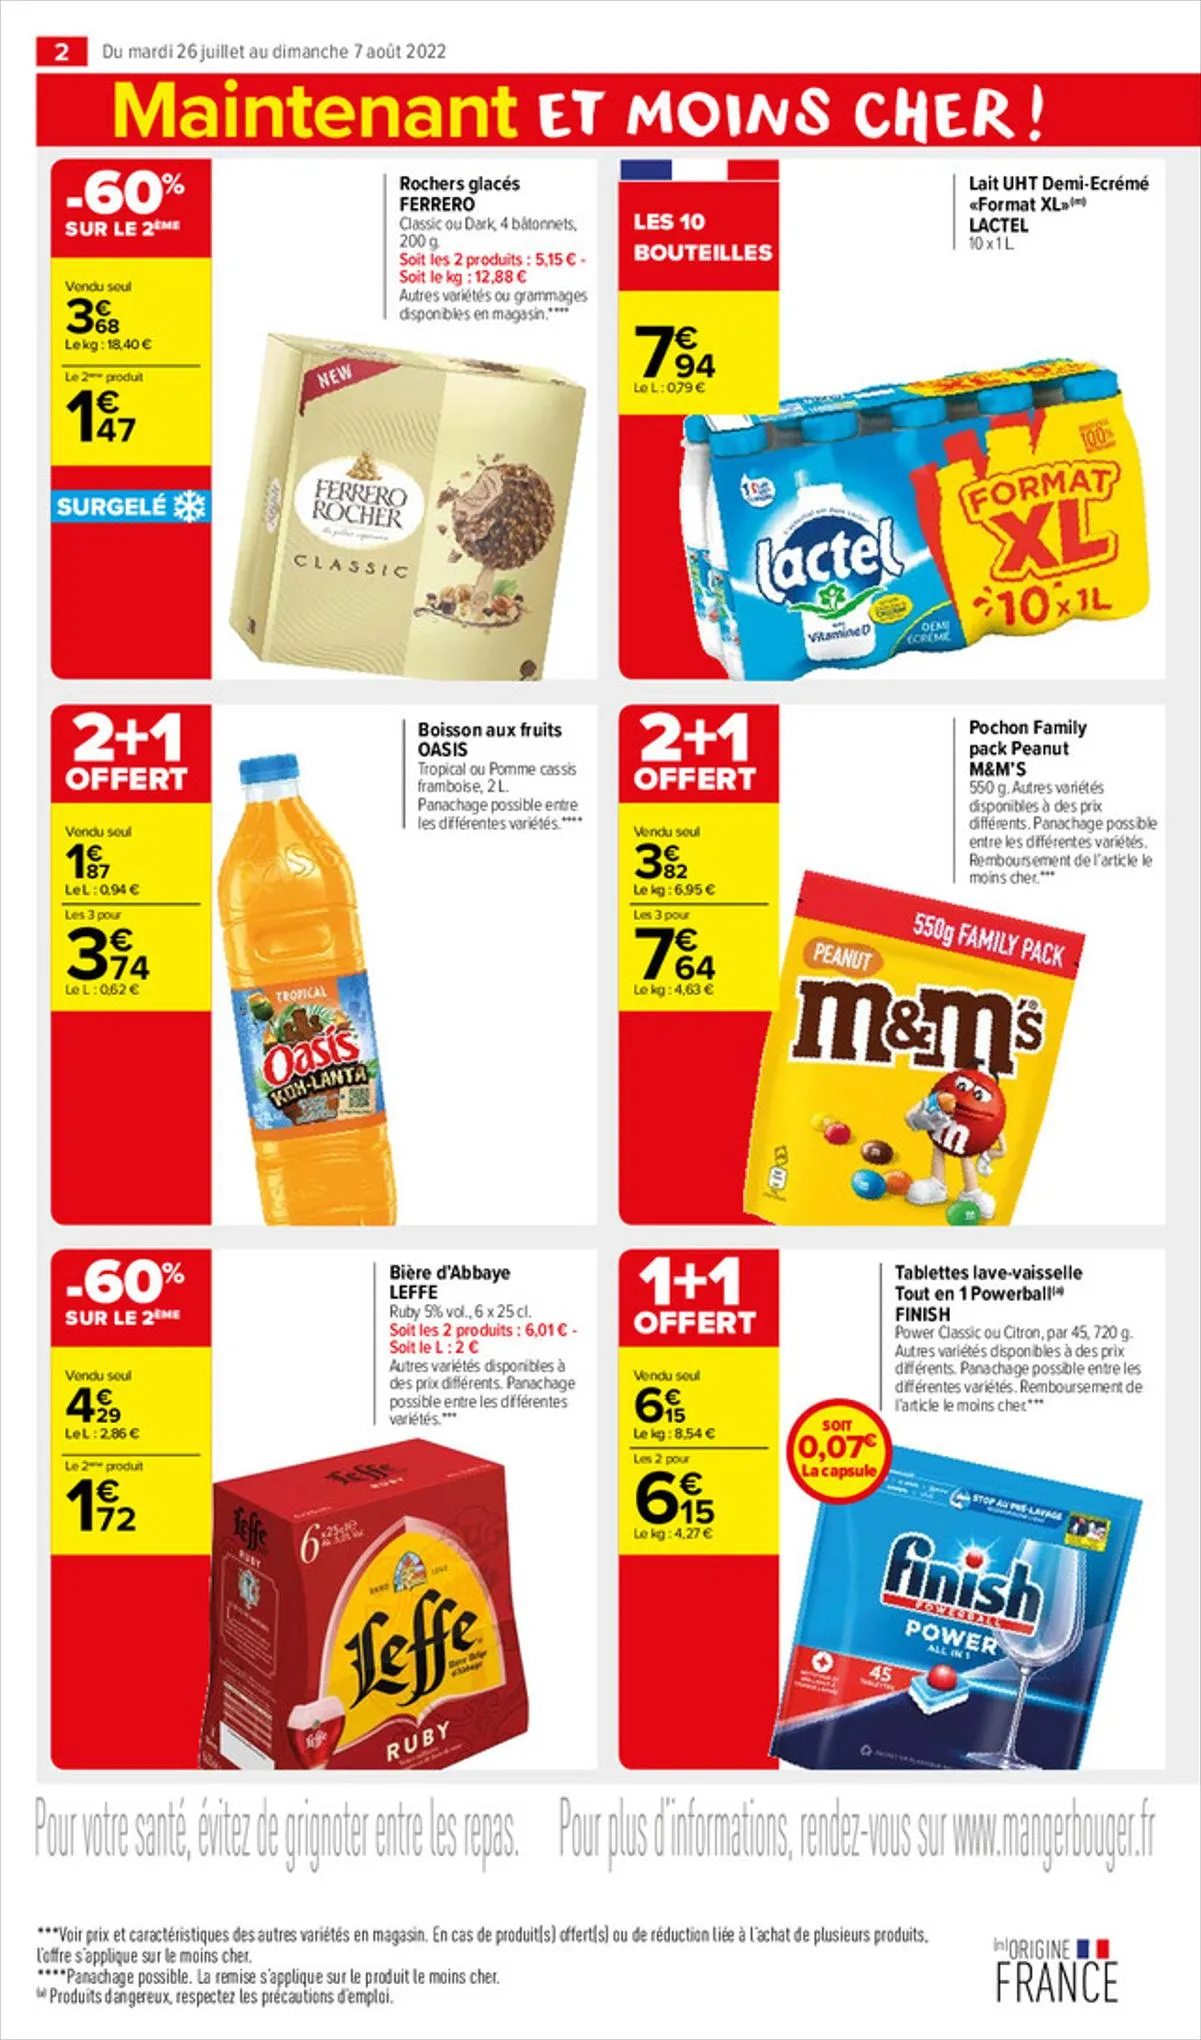 Catalogue Le bon goût à petits prix !, page 00002